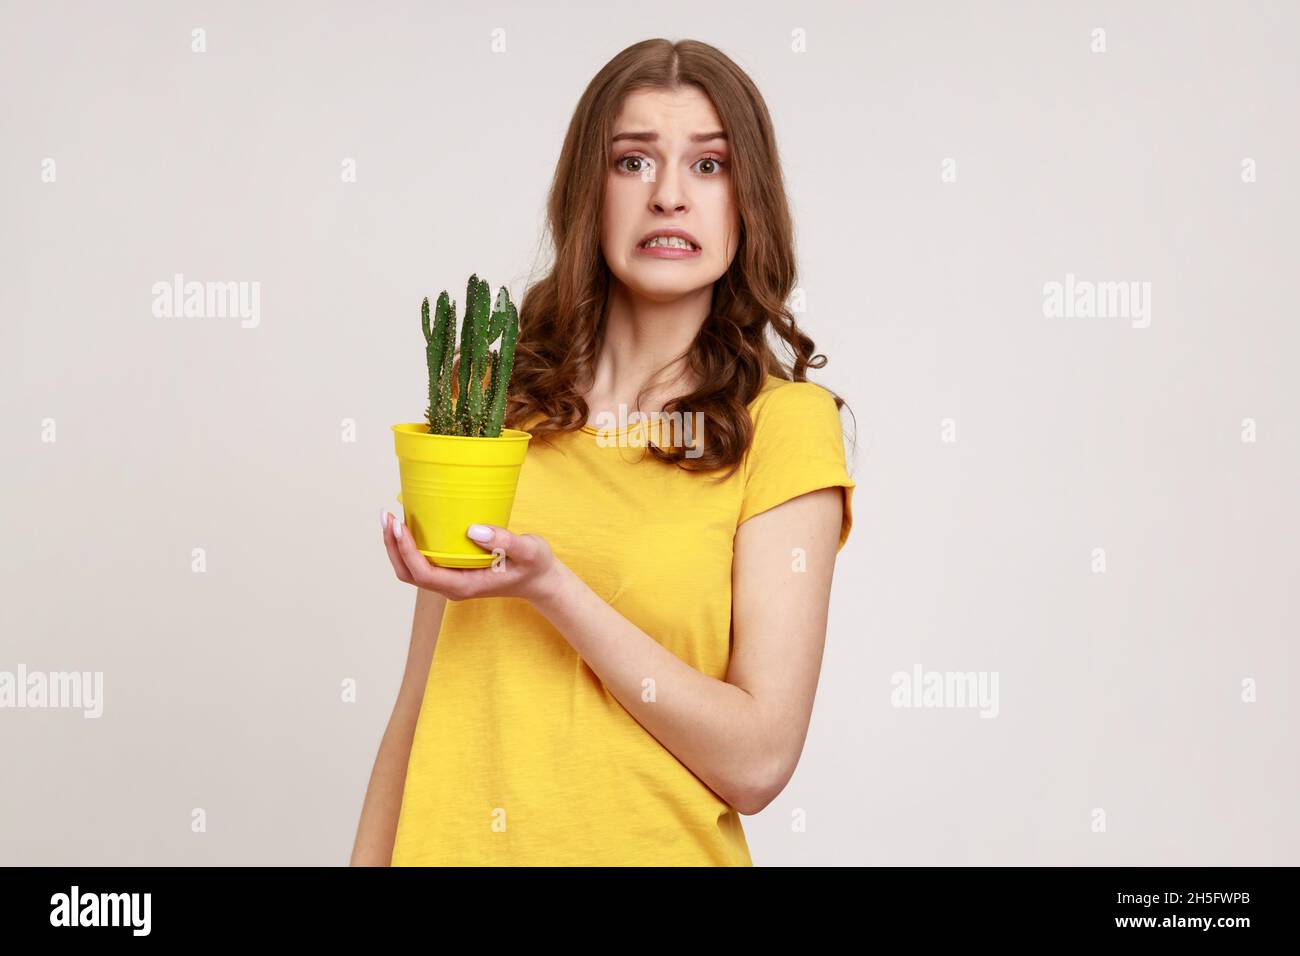 Ritratto di attraente giovane donna indossando giallo casual T-shirt che tiene il cactus ingannevole in vaso di fiori in mani e volto accigliato, guardando la macchina fotografica. Studio interno girato isolato su sfondo grigio. Foto Stock